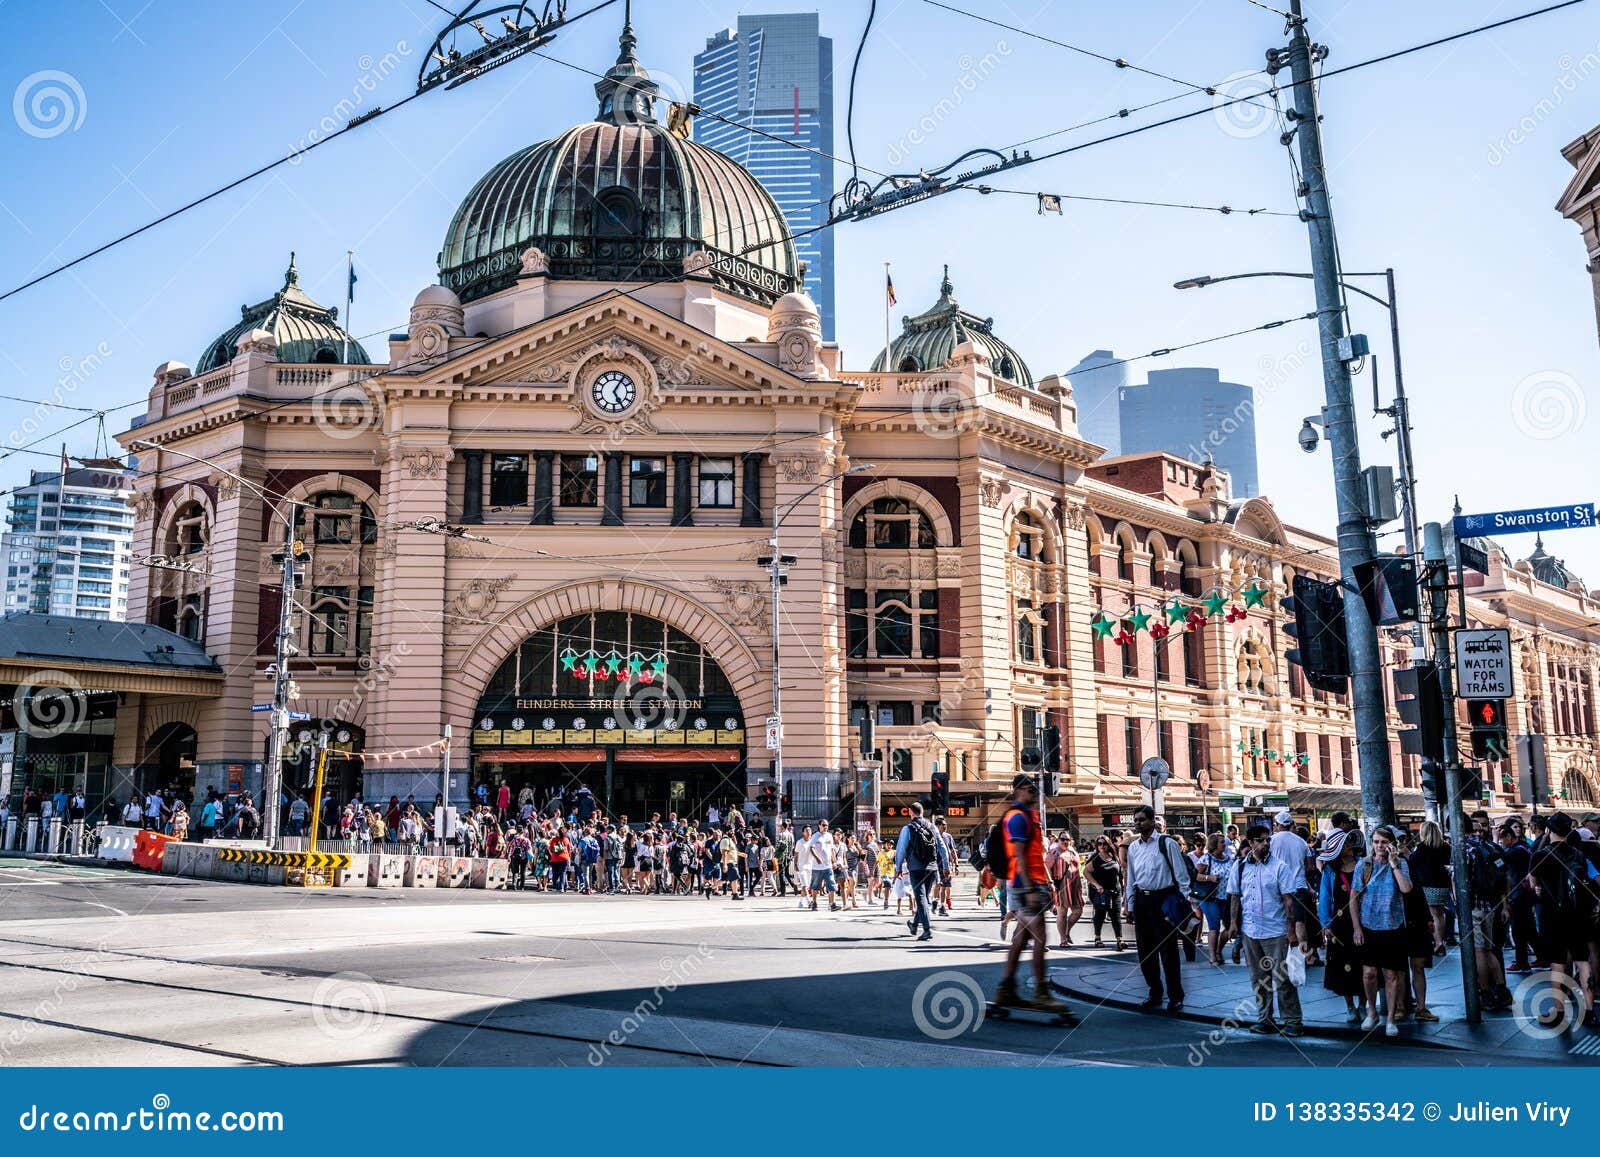 3 janvier 2019, Melbourne Australie : Vue de face de l'entrée de bâtiment de gare ferroviaire de rue de Flinders complètement du pleople à Melbourne Australie